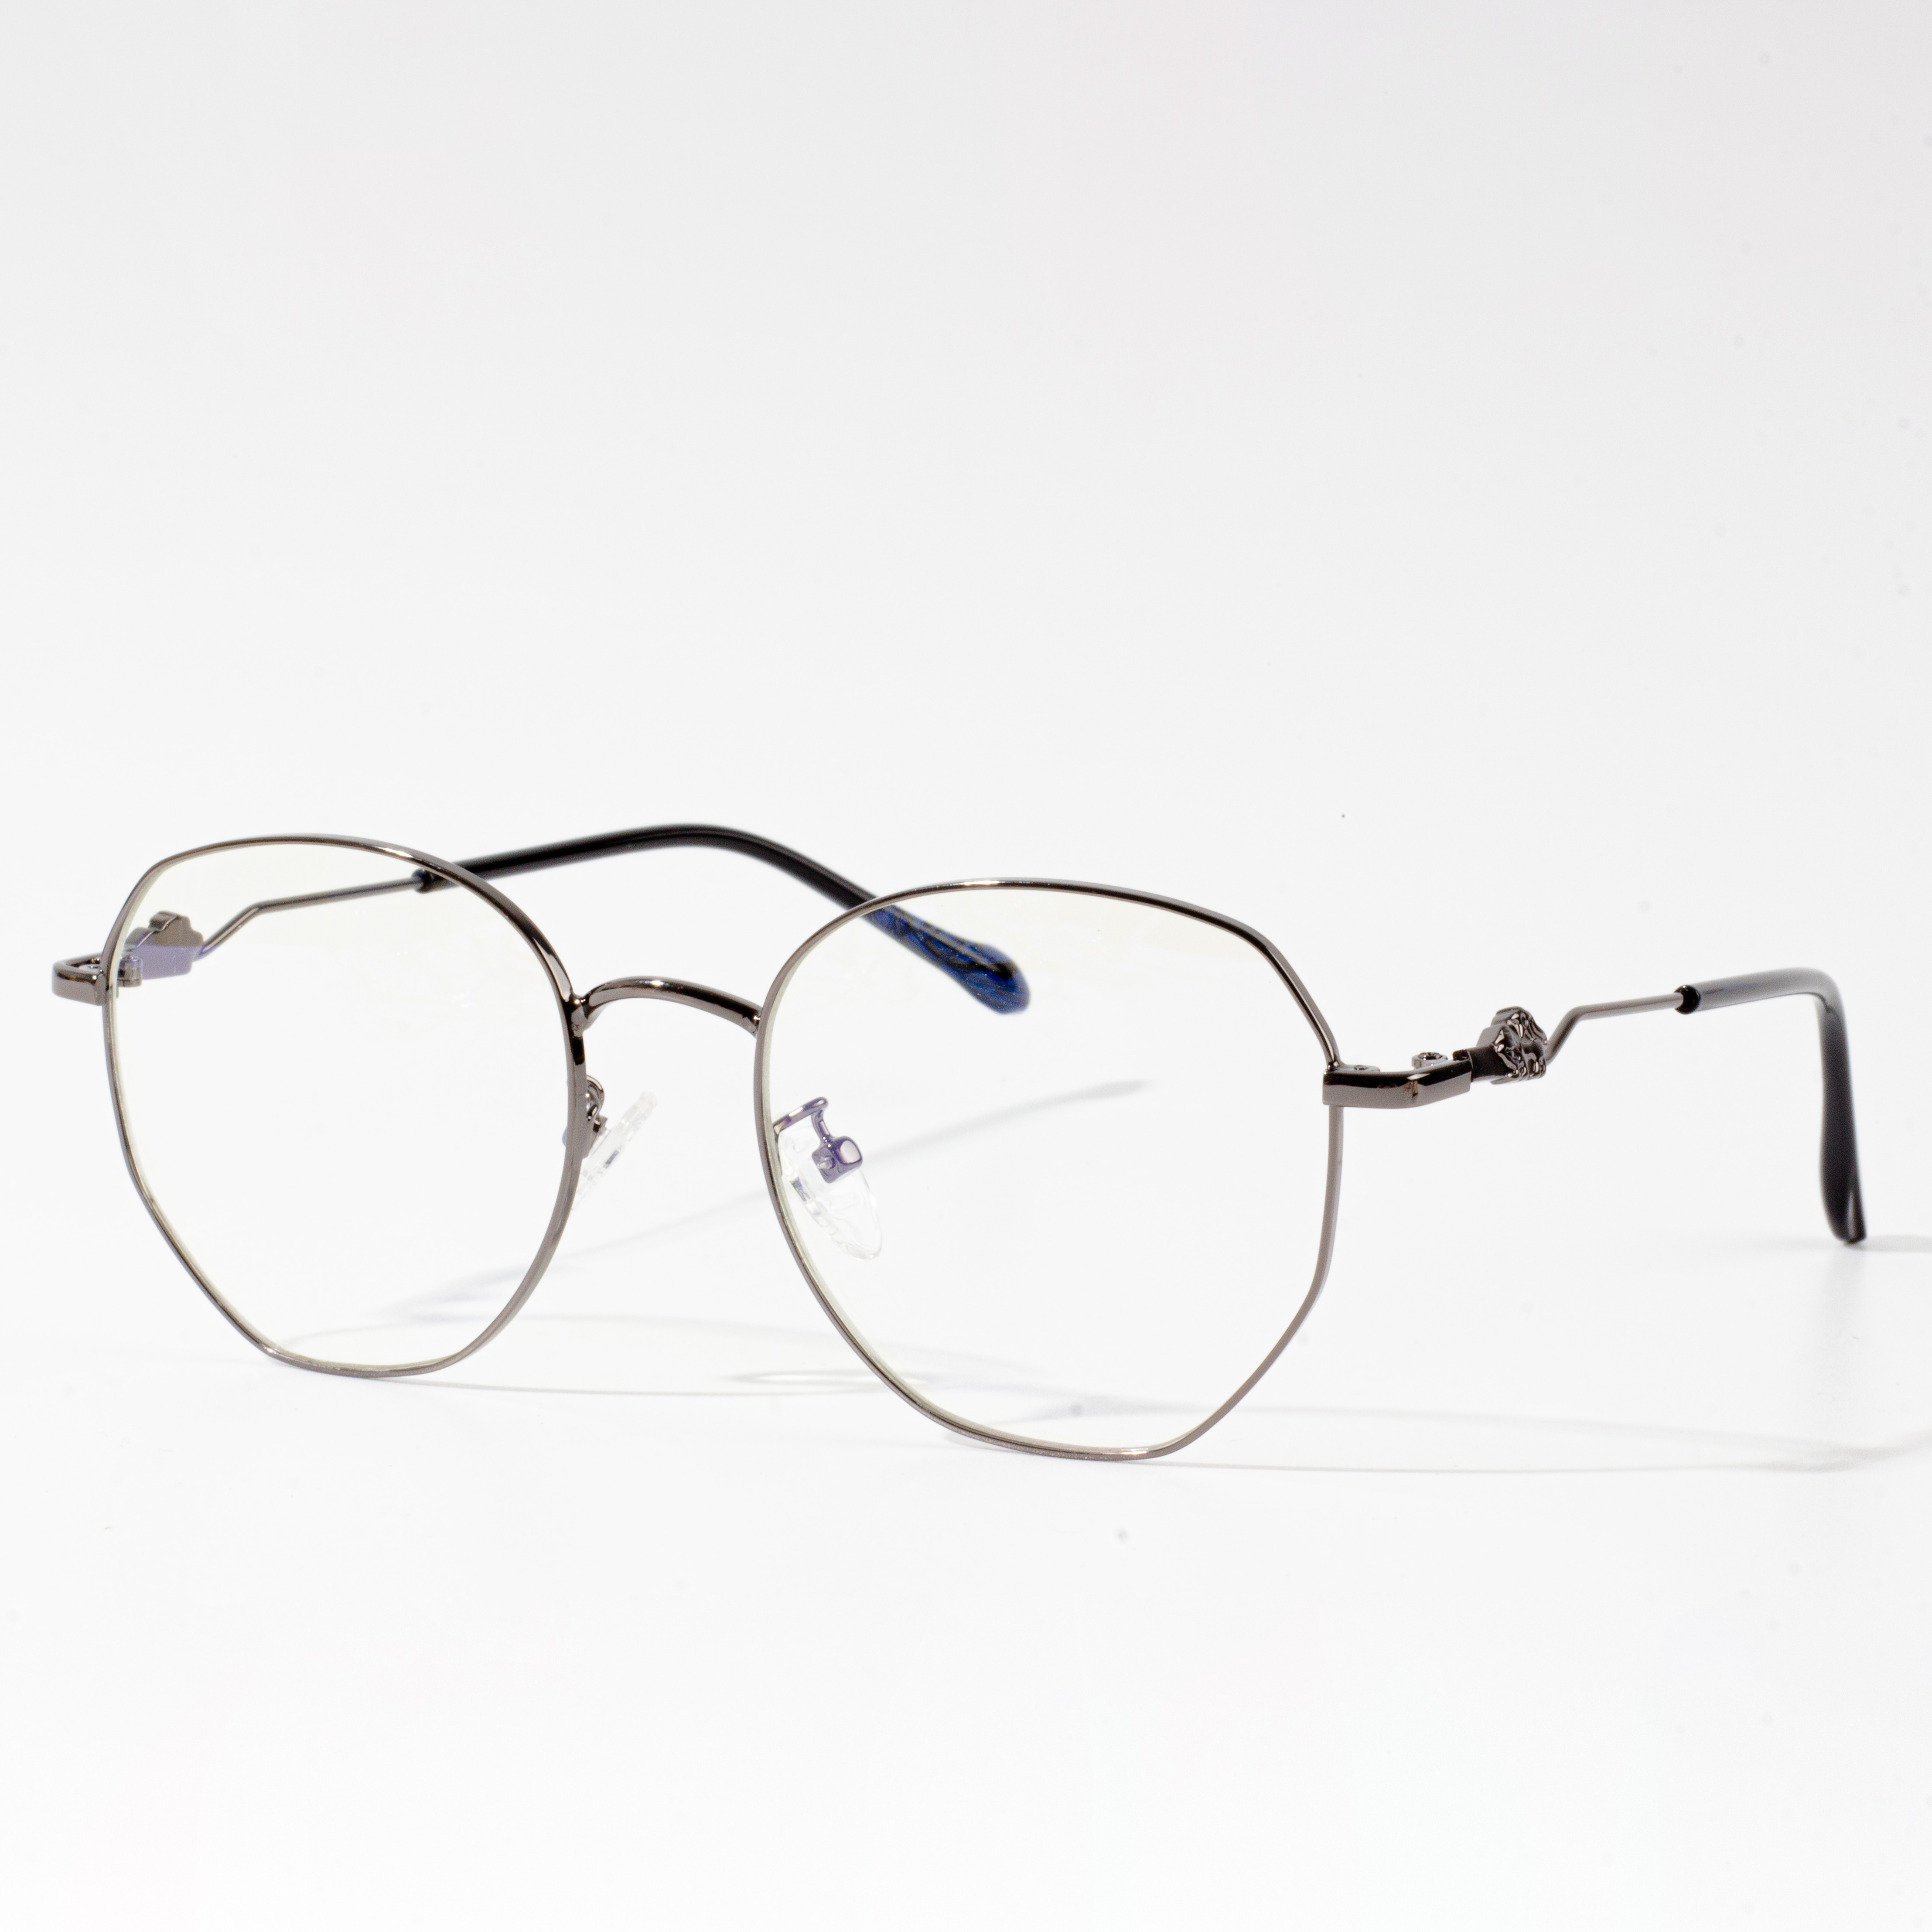 regulacja oprawek okularów